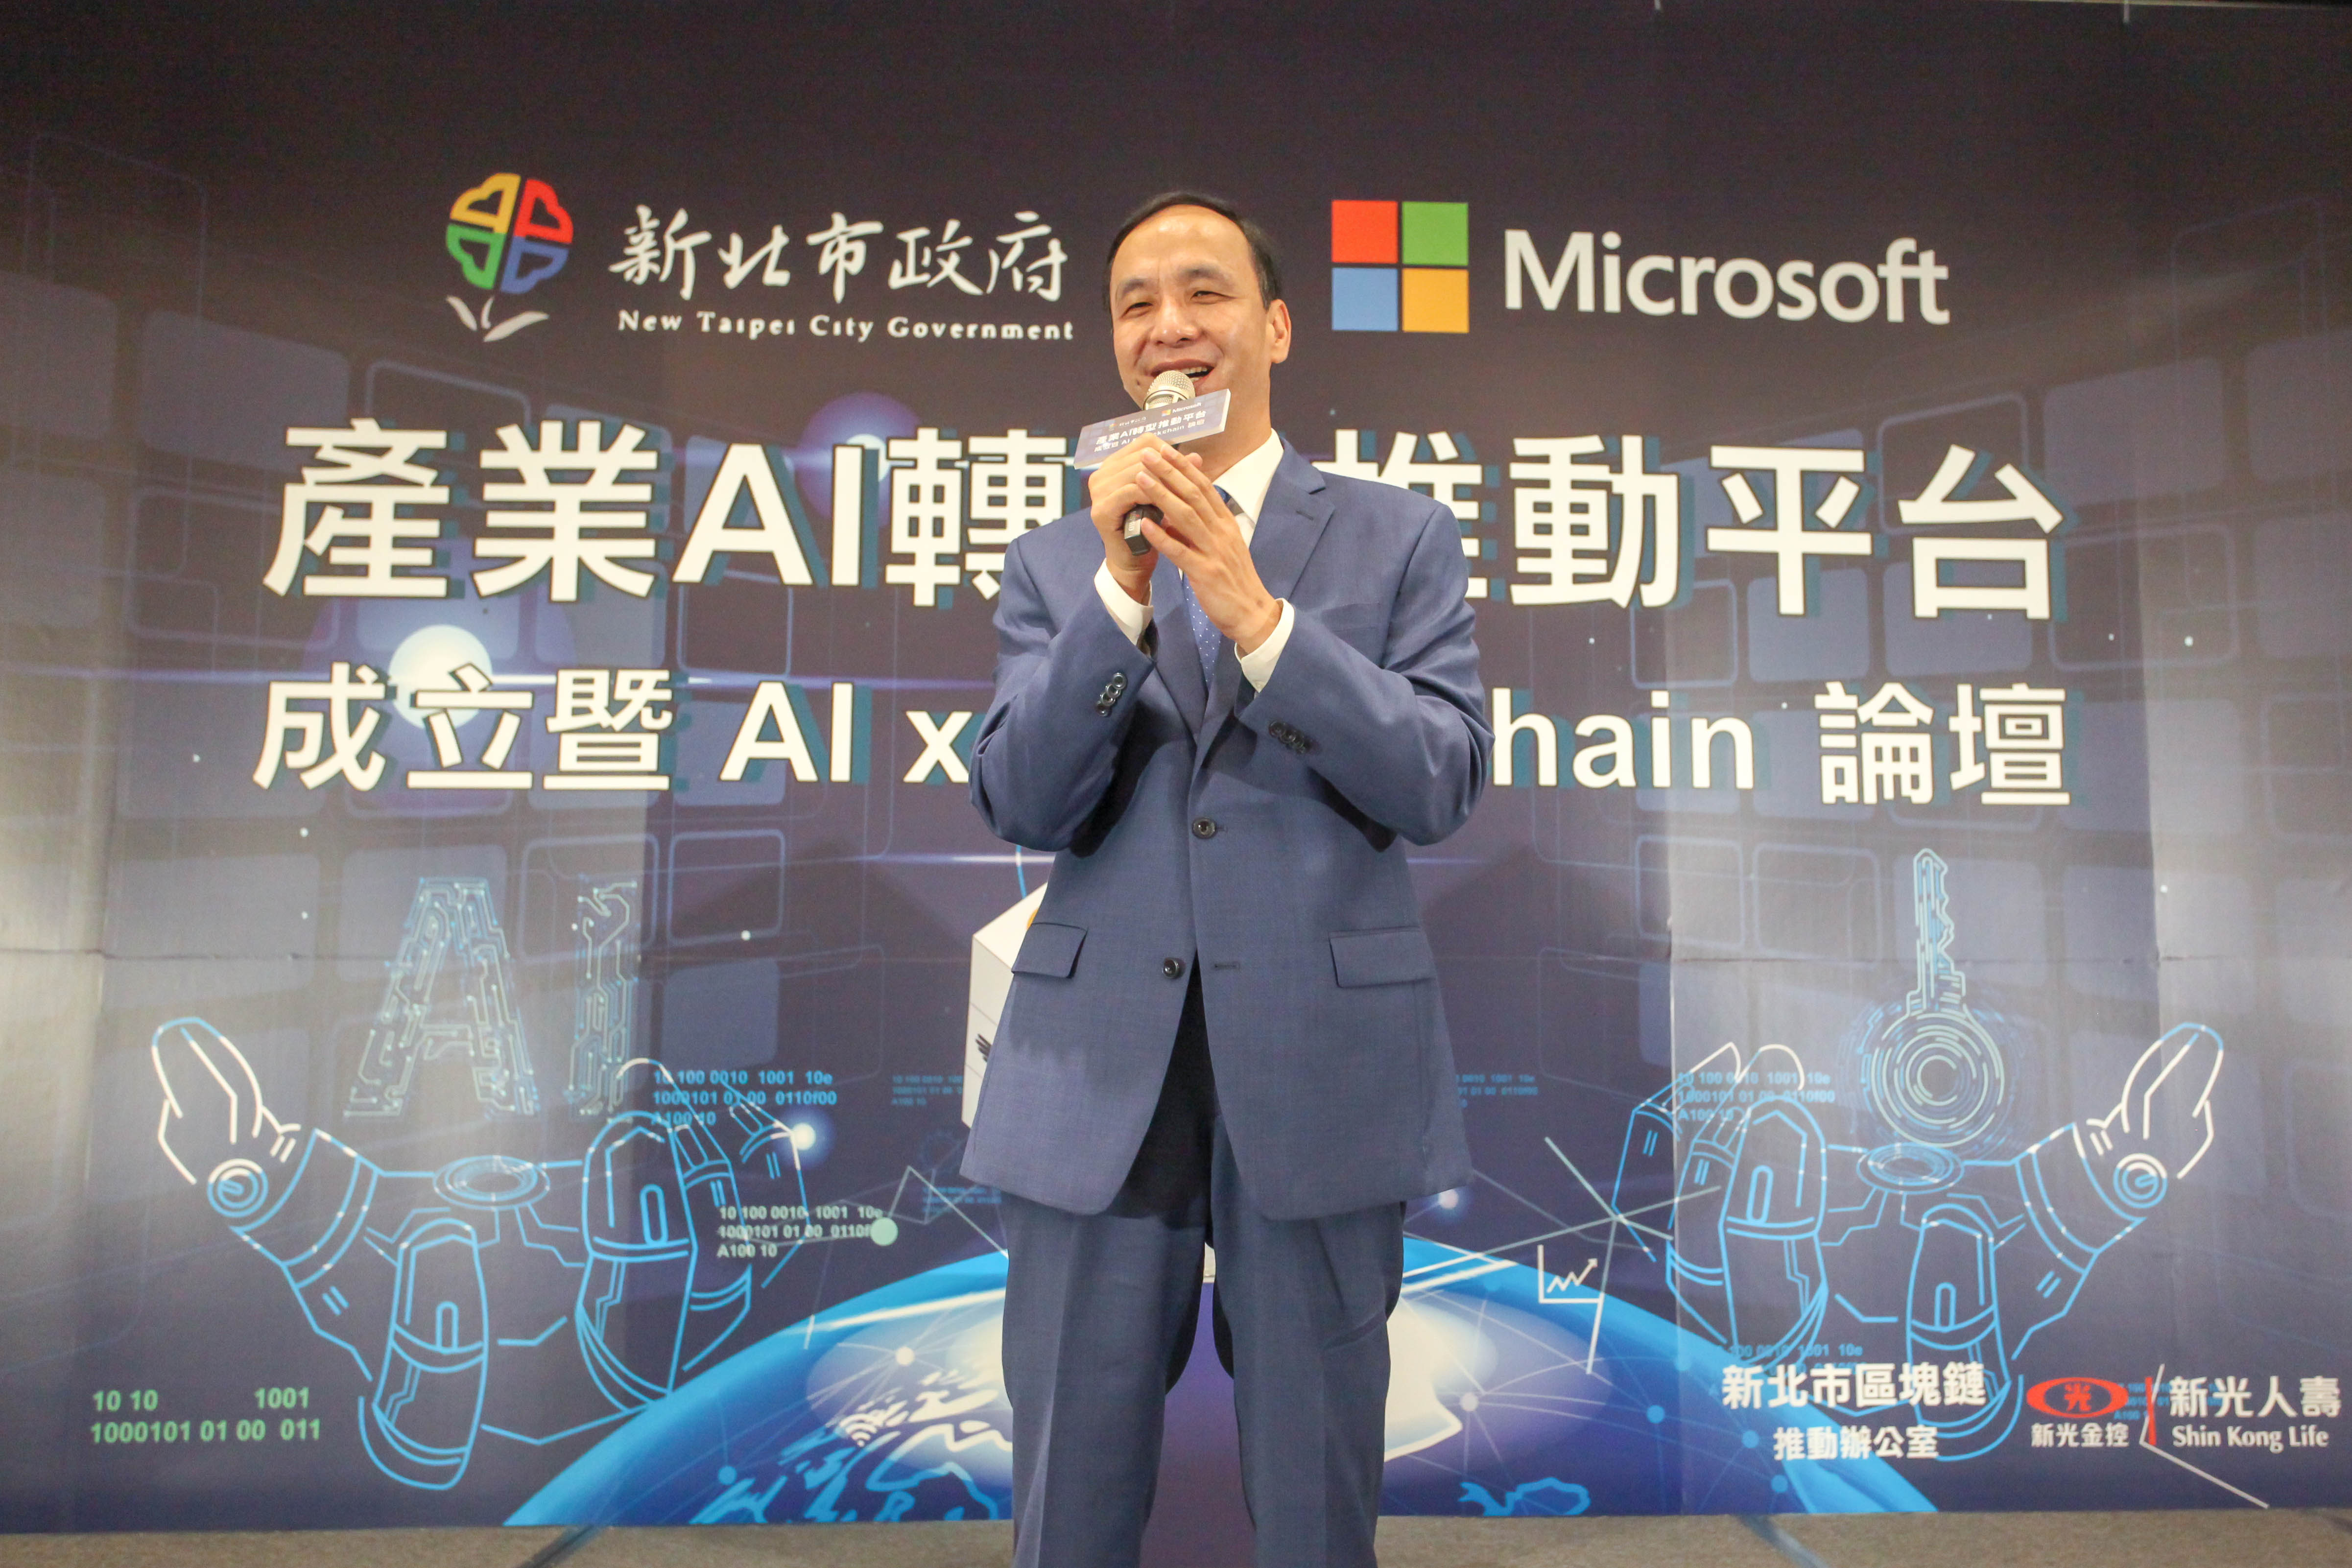 新北市長朱立倫出席「新北市-微軟 產業AI轉型推動平台成立暨AI x Blockchain論壇」並致詞